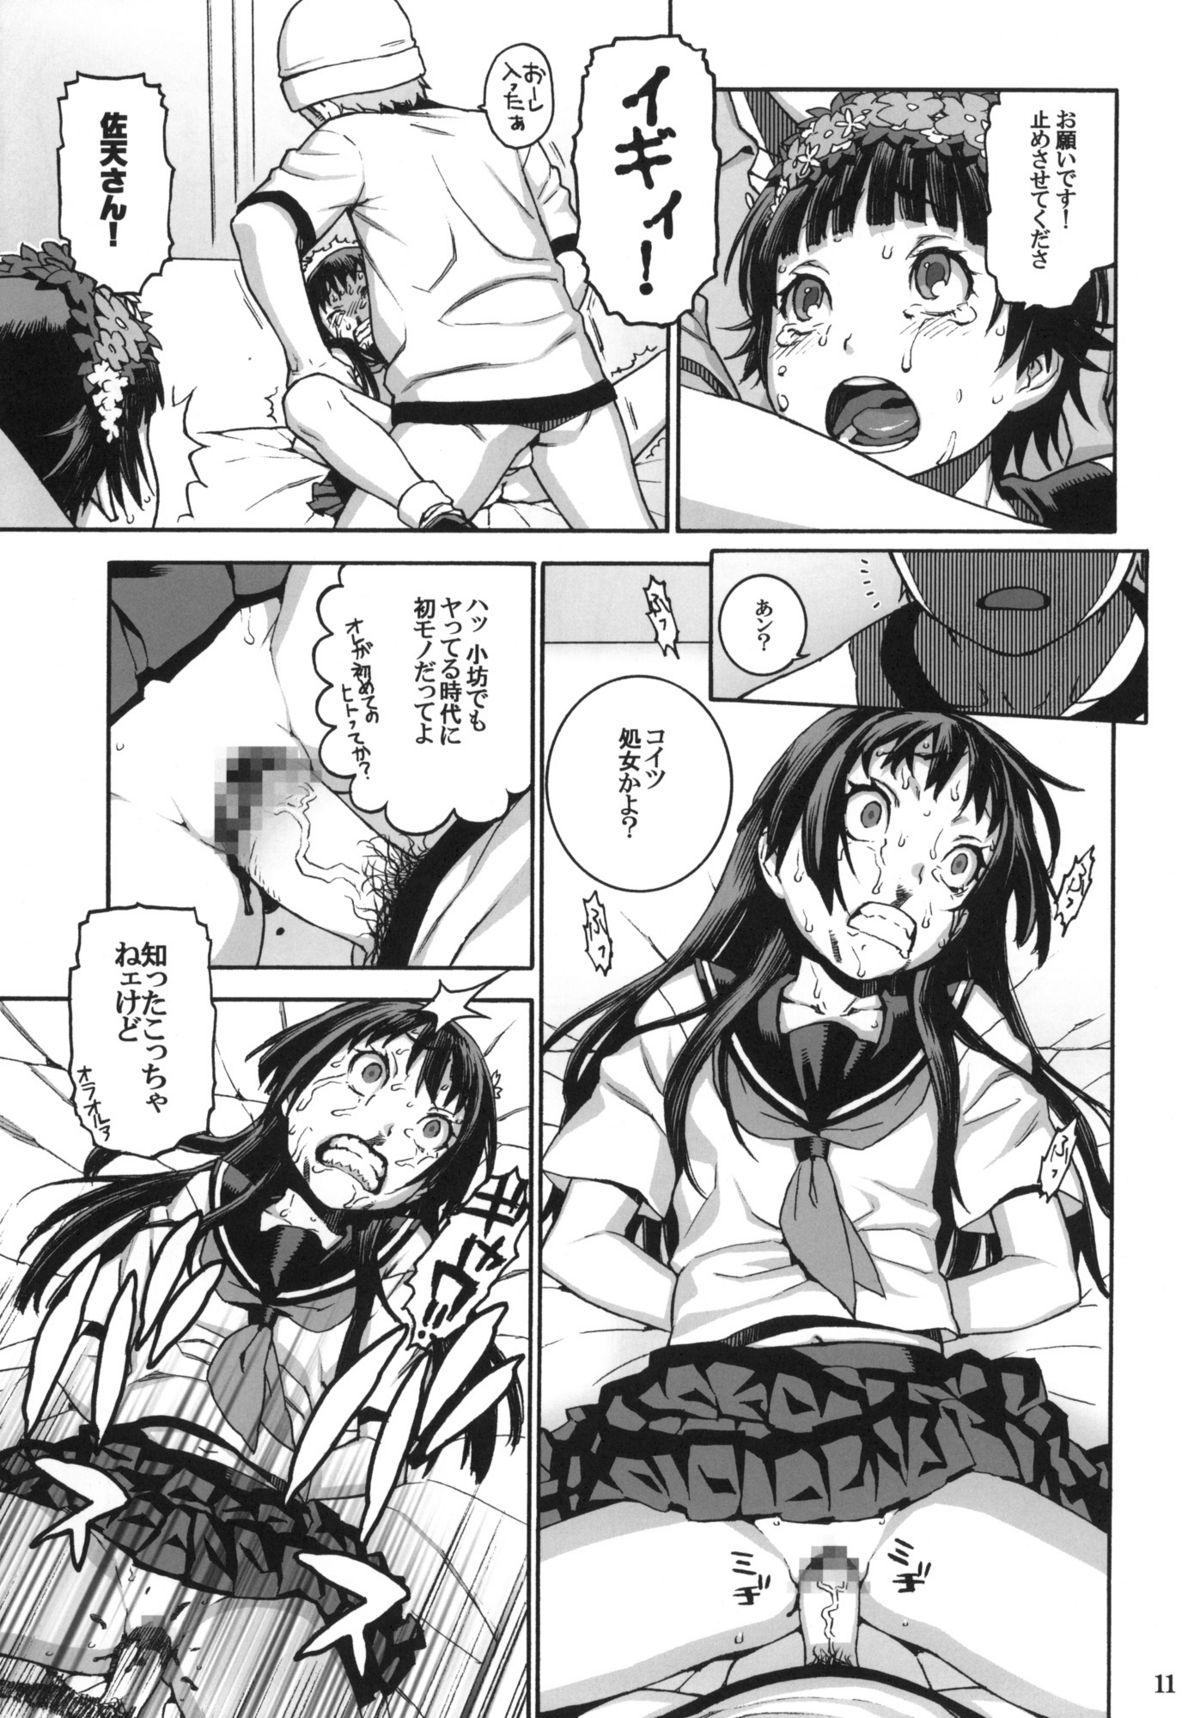 Humiliation Pov Toaru Jiken no Heroines - Toaru kagaku no railgun Sesso - Page 10